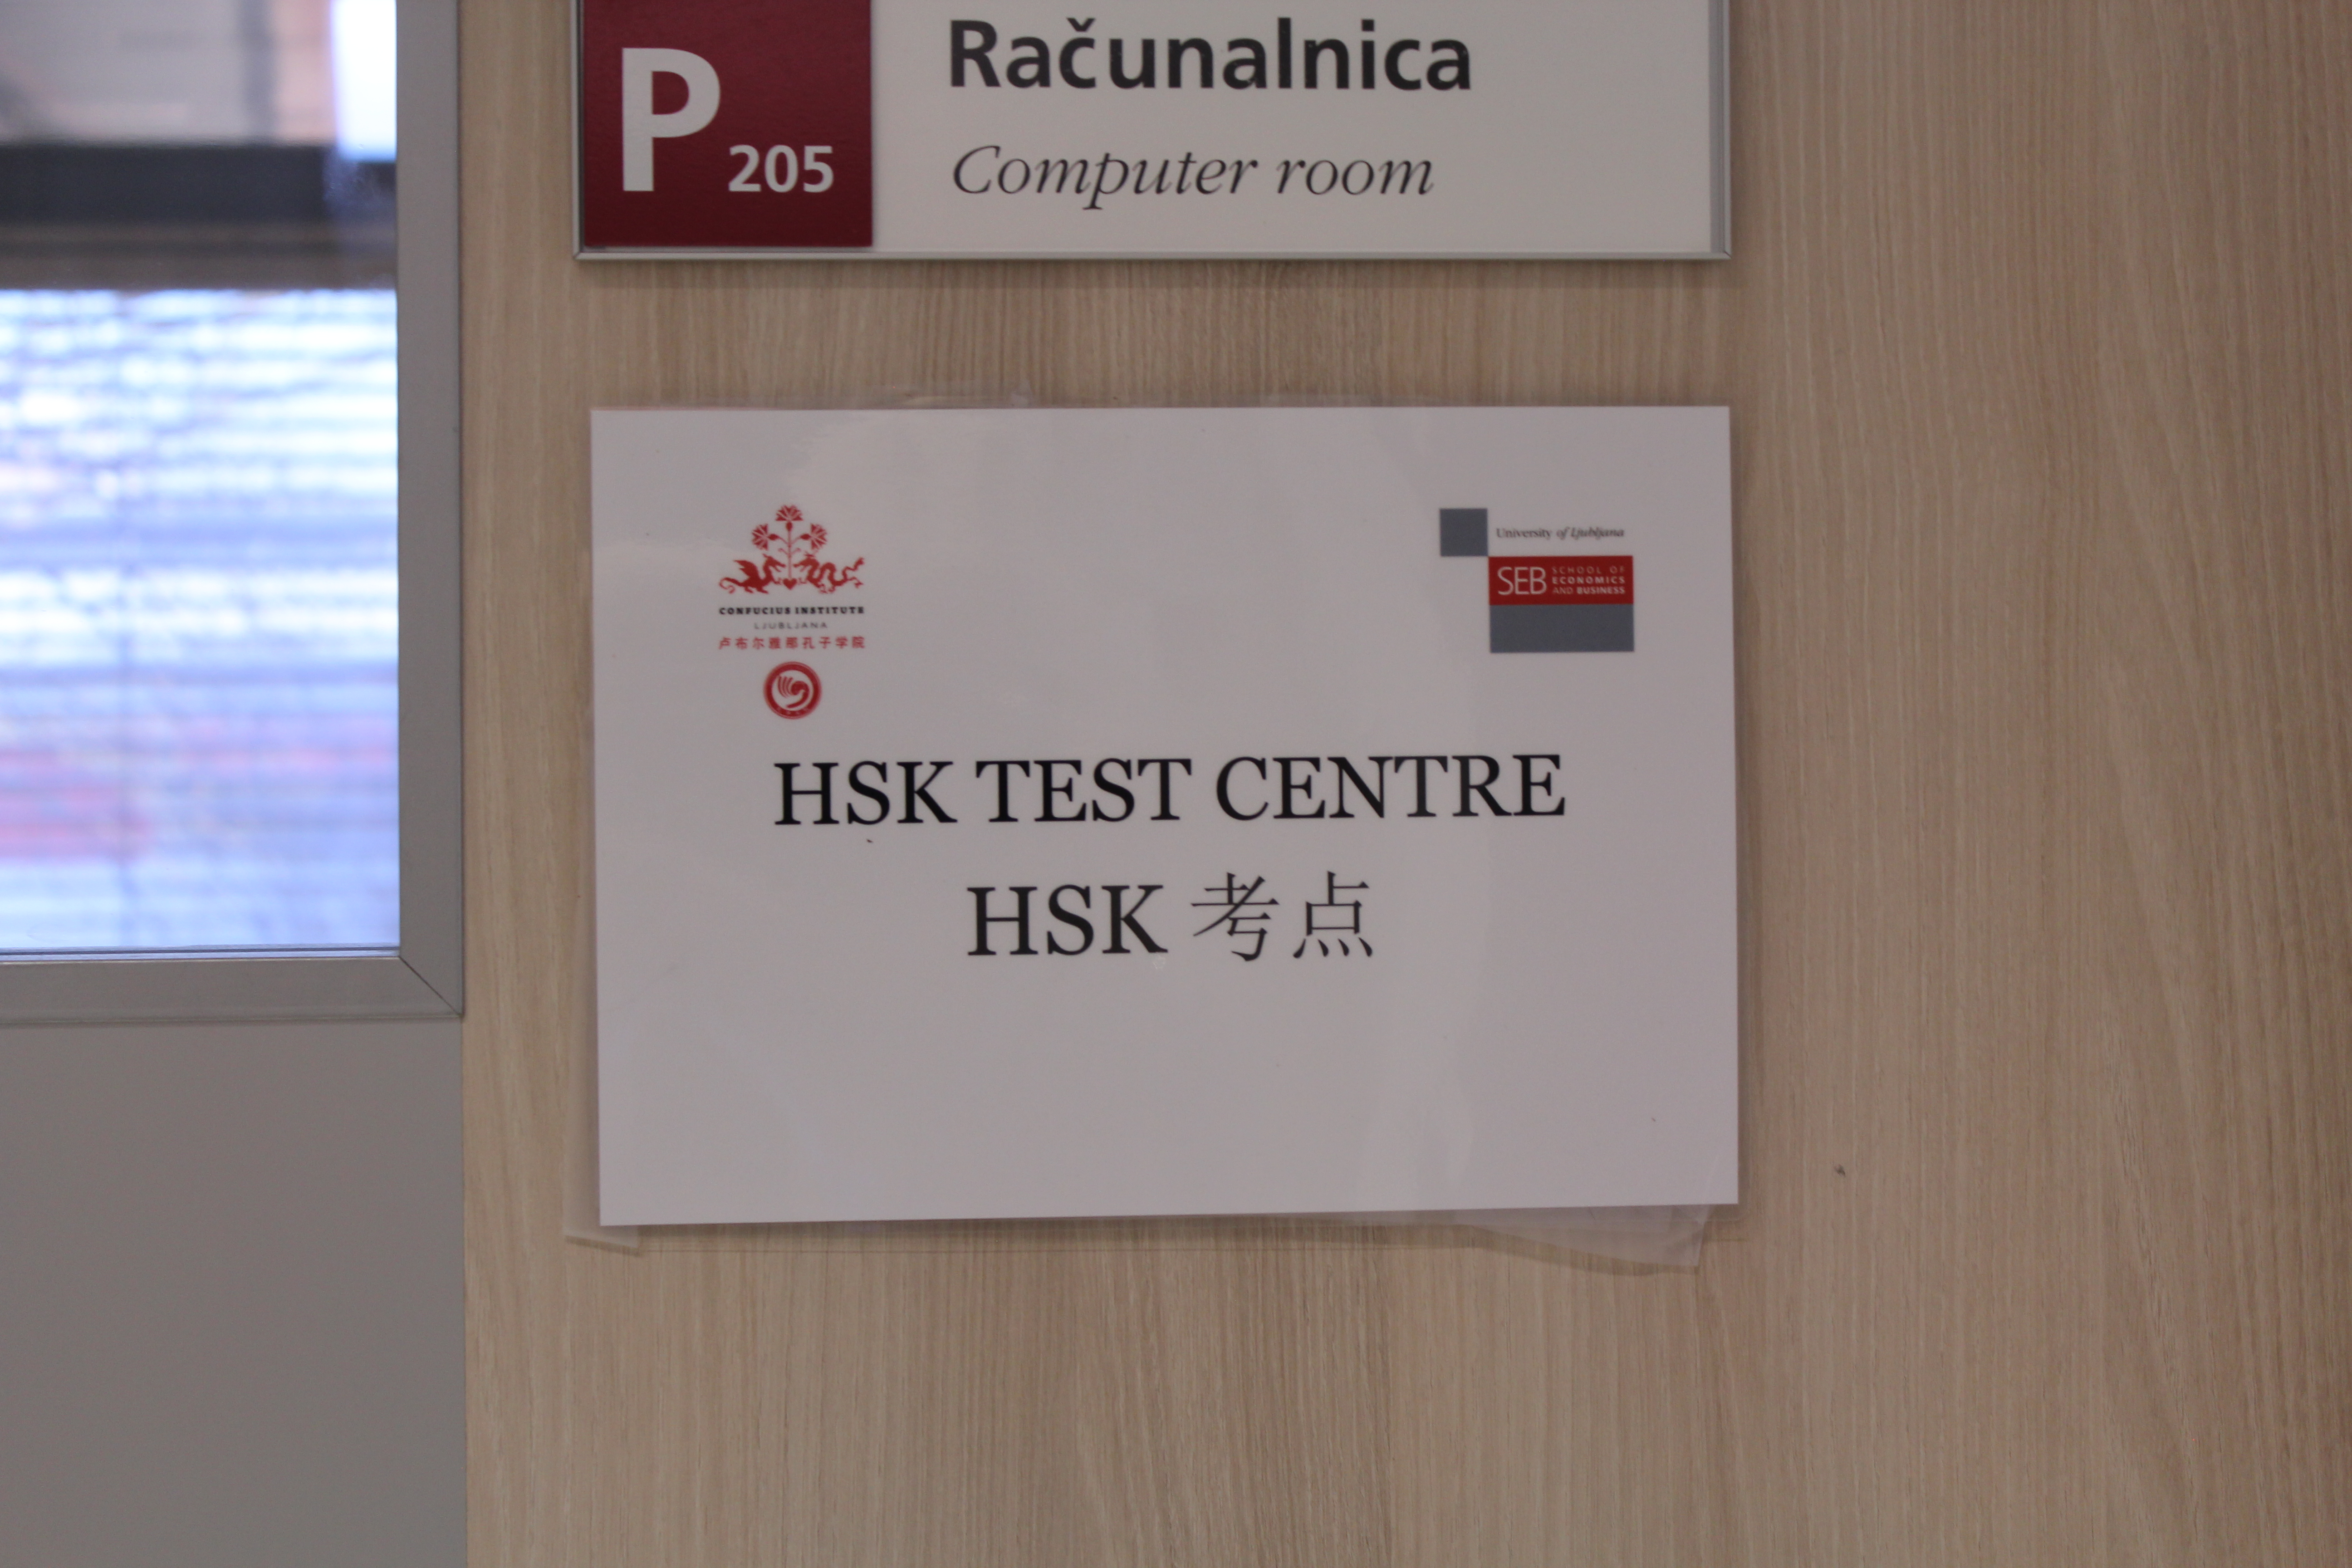 我们将在秋季学期组织HSK和HSKK考试。